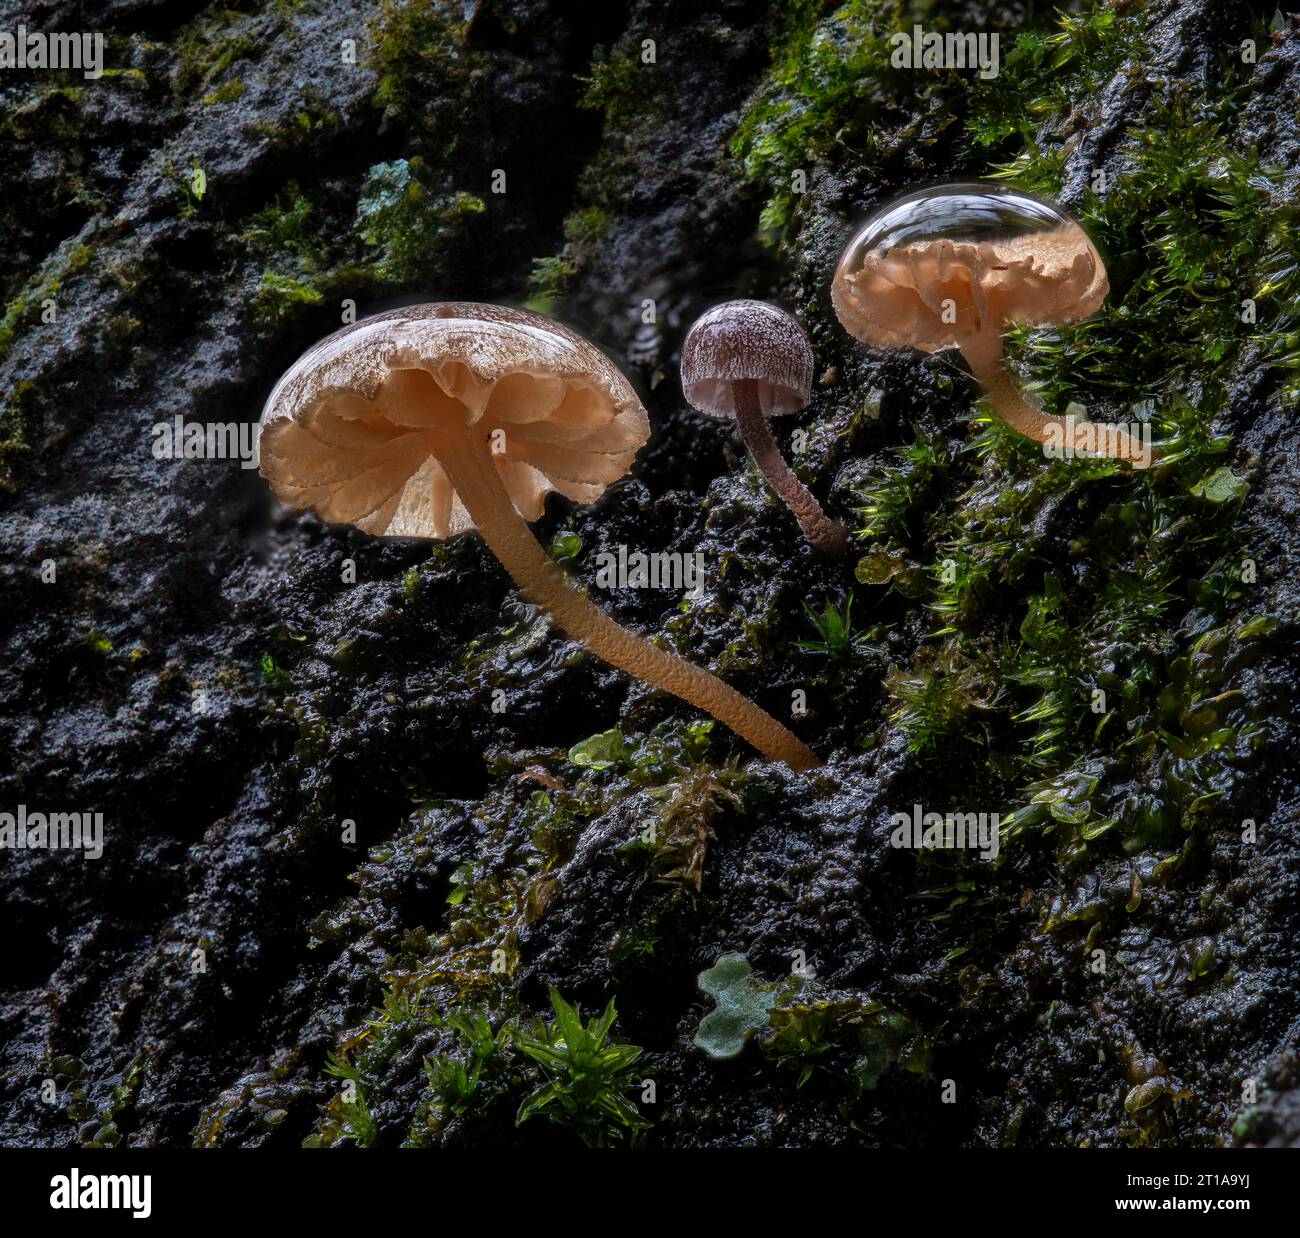 Tre piccoli funghi che crescono sulla corteccia di un albero dopo una pioggia. Il cappuccio a fungo più grande è largo solo 4 mm. Foto Stock